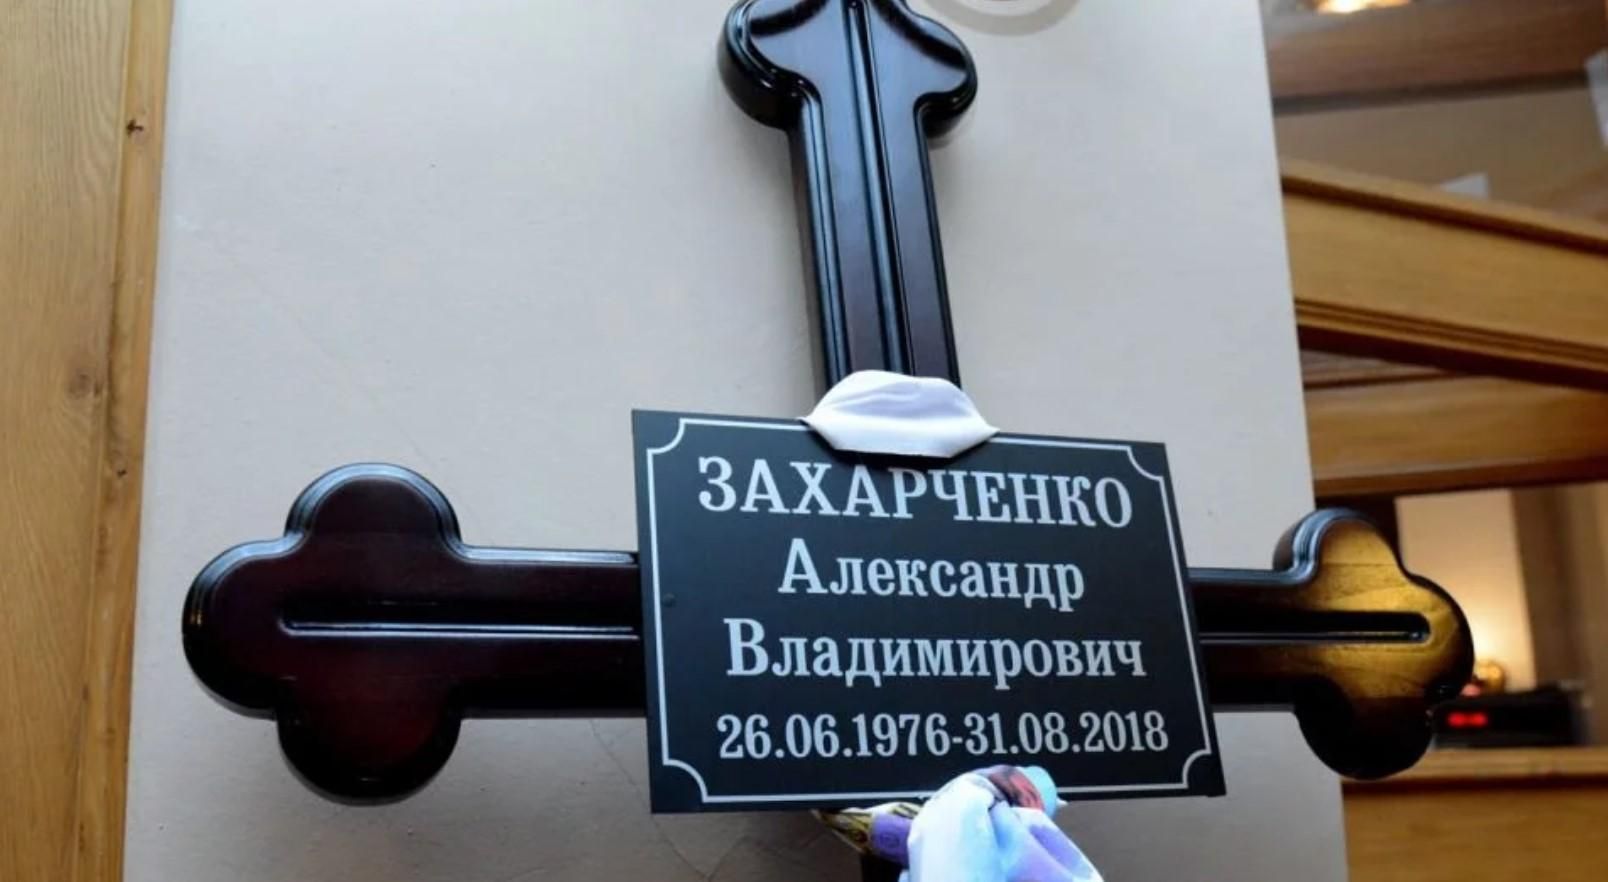 Гроб с телом Захарченко открыли перед погребением: фото